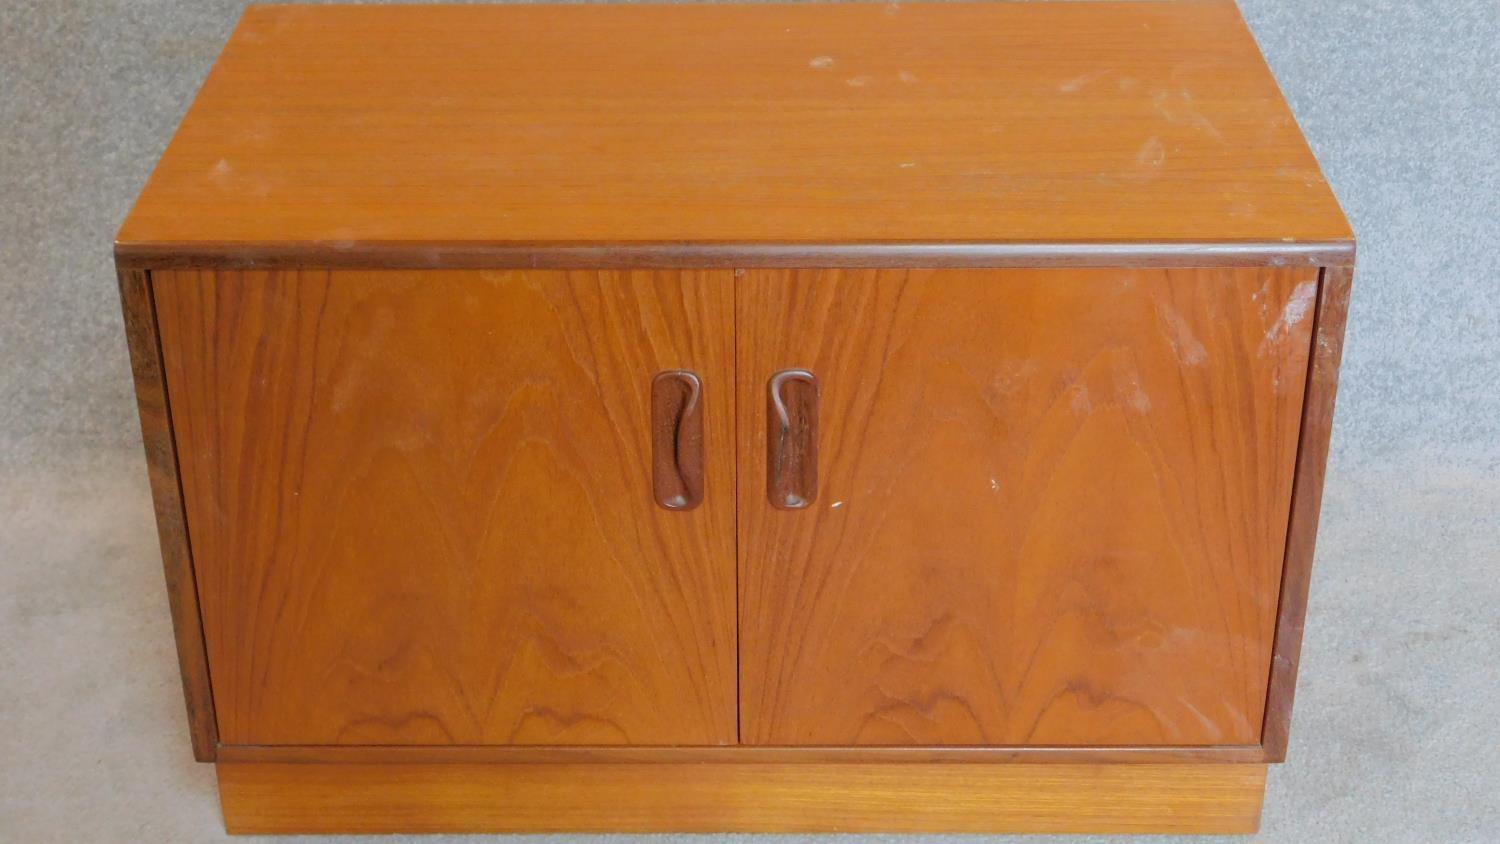 A teak two door G-Plan cabinet. 53x81x46